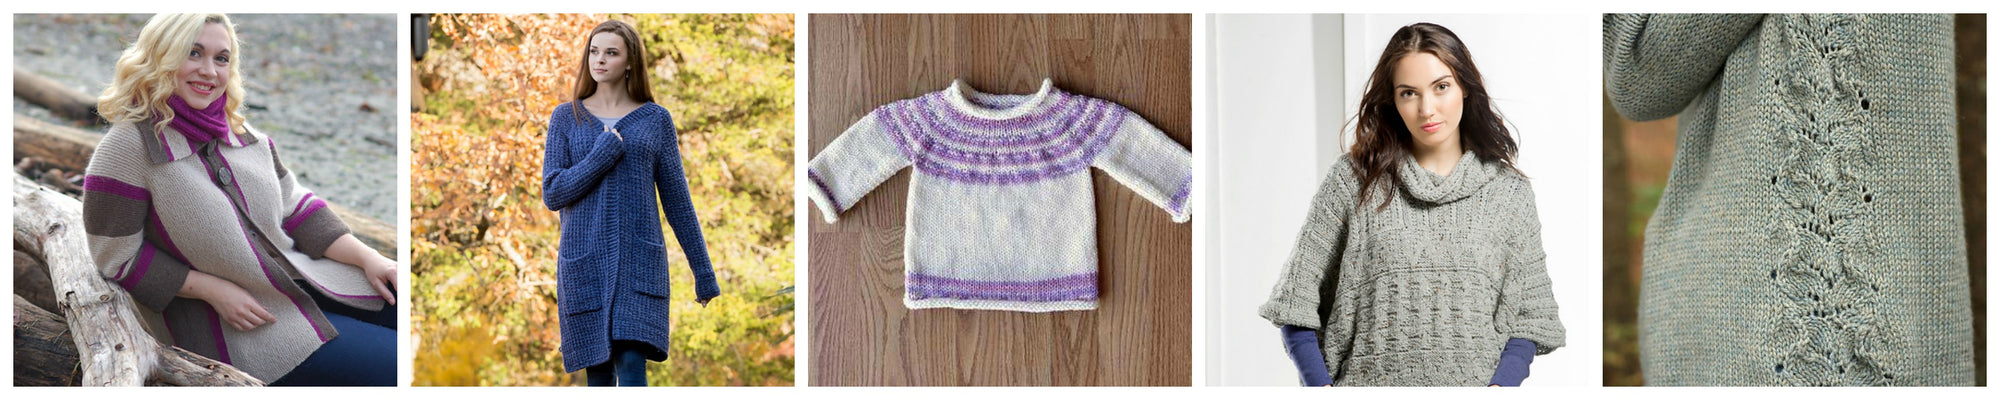 Sweater Weather: 5 Free Knitting Patterns